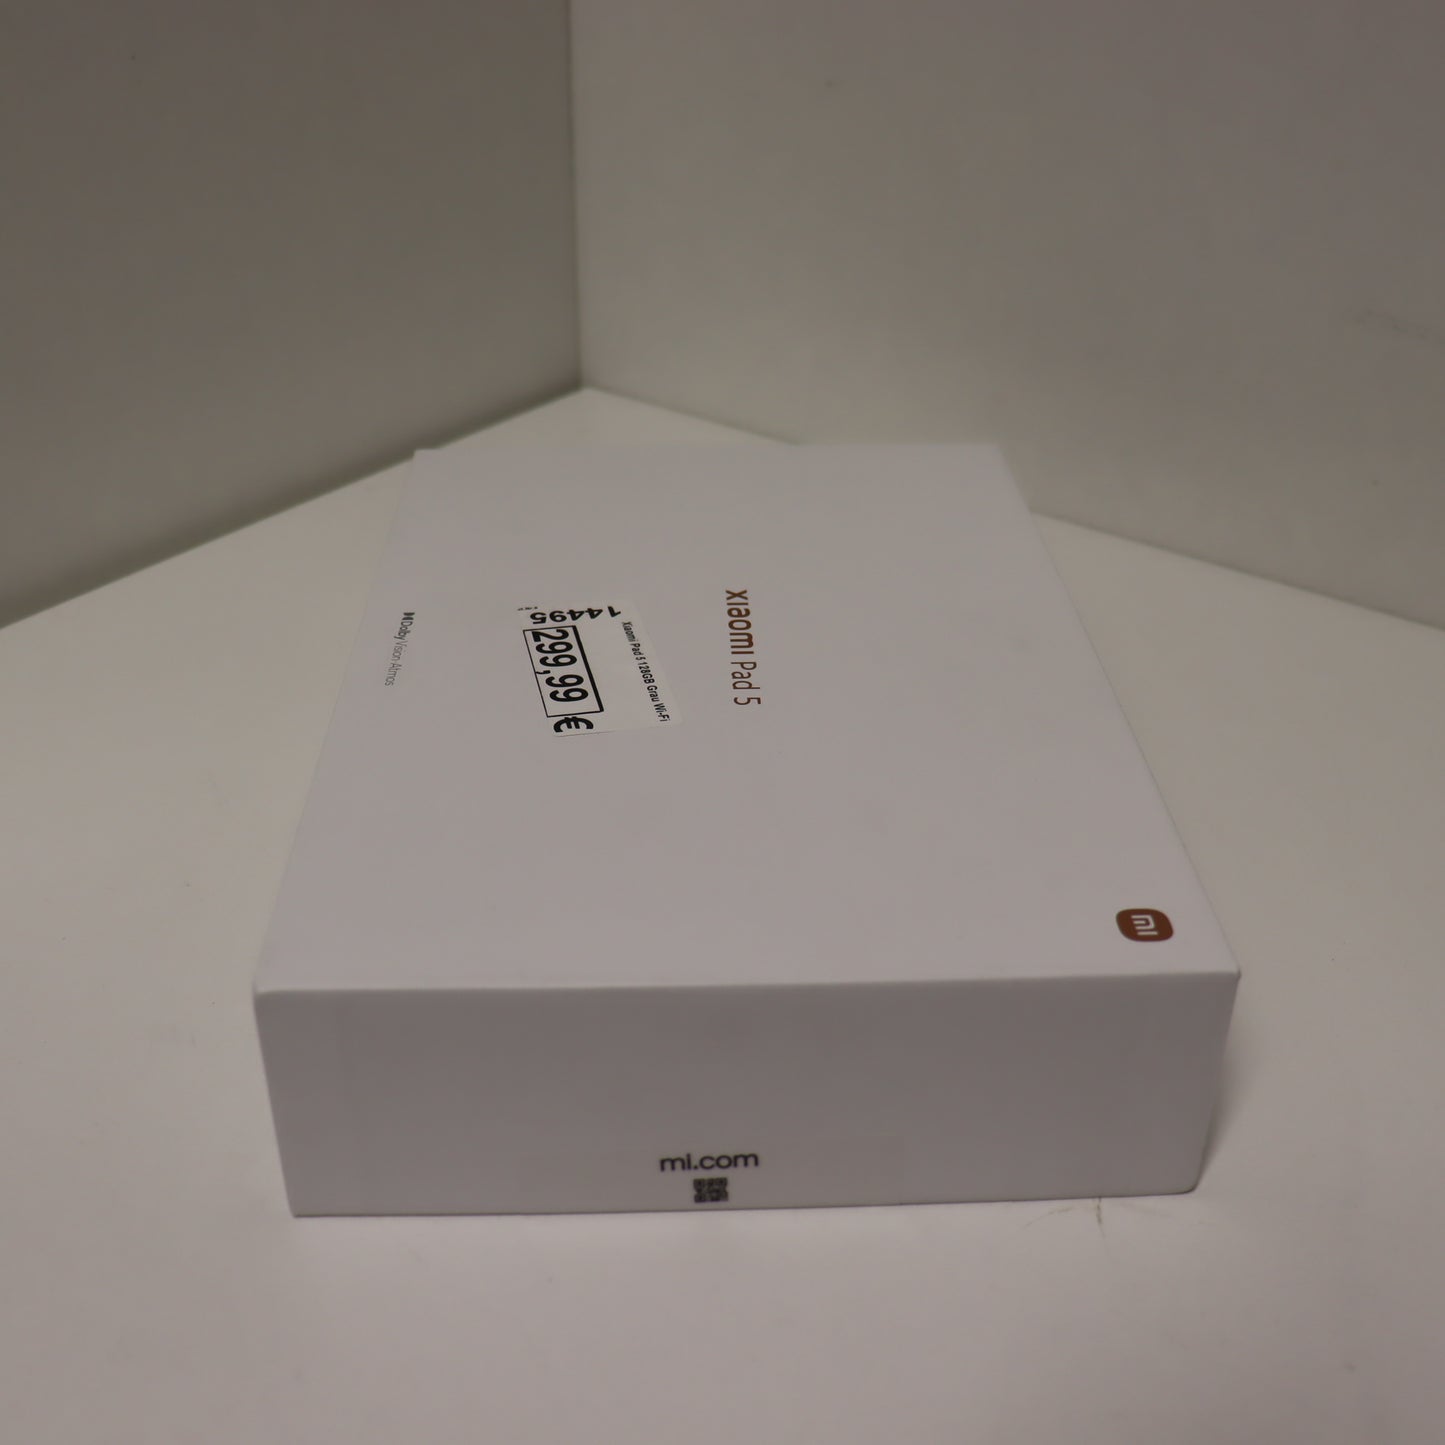 Xiaomi Pad 5 128GB Grau Wi-Fi